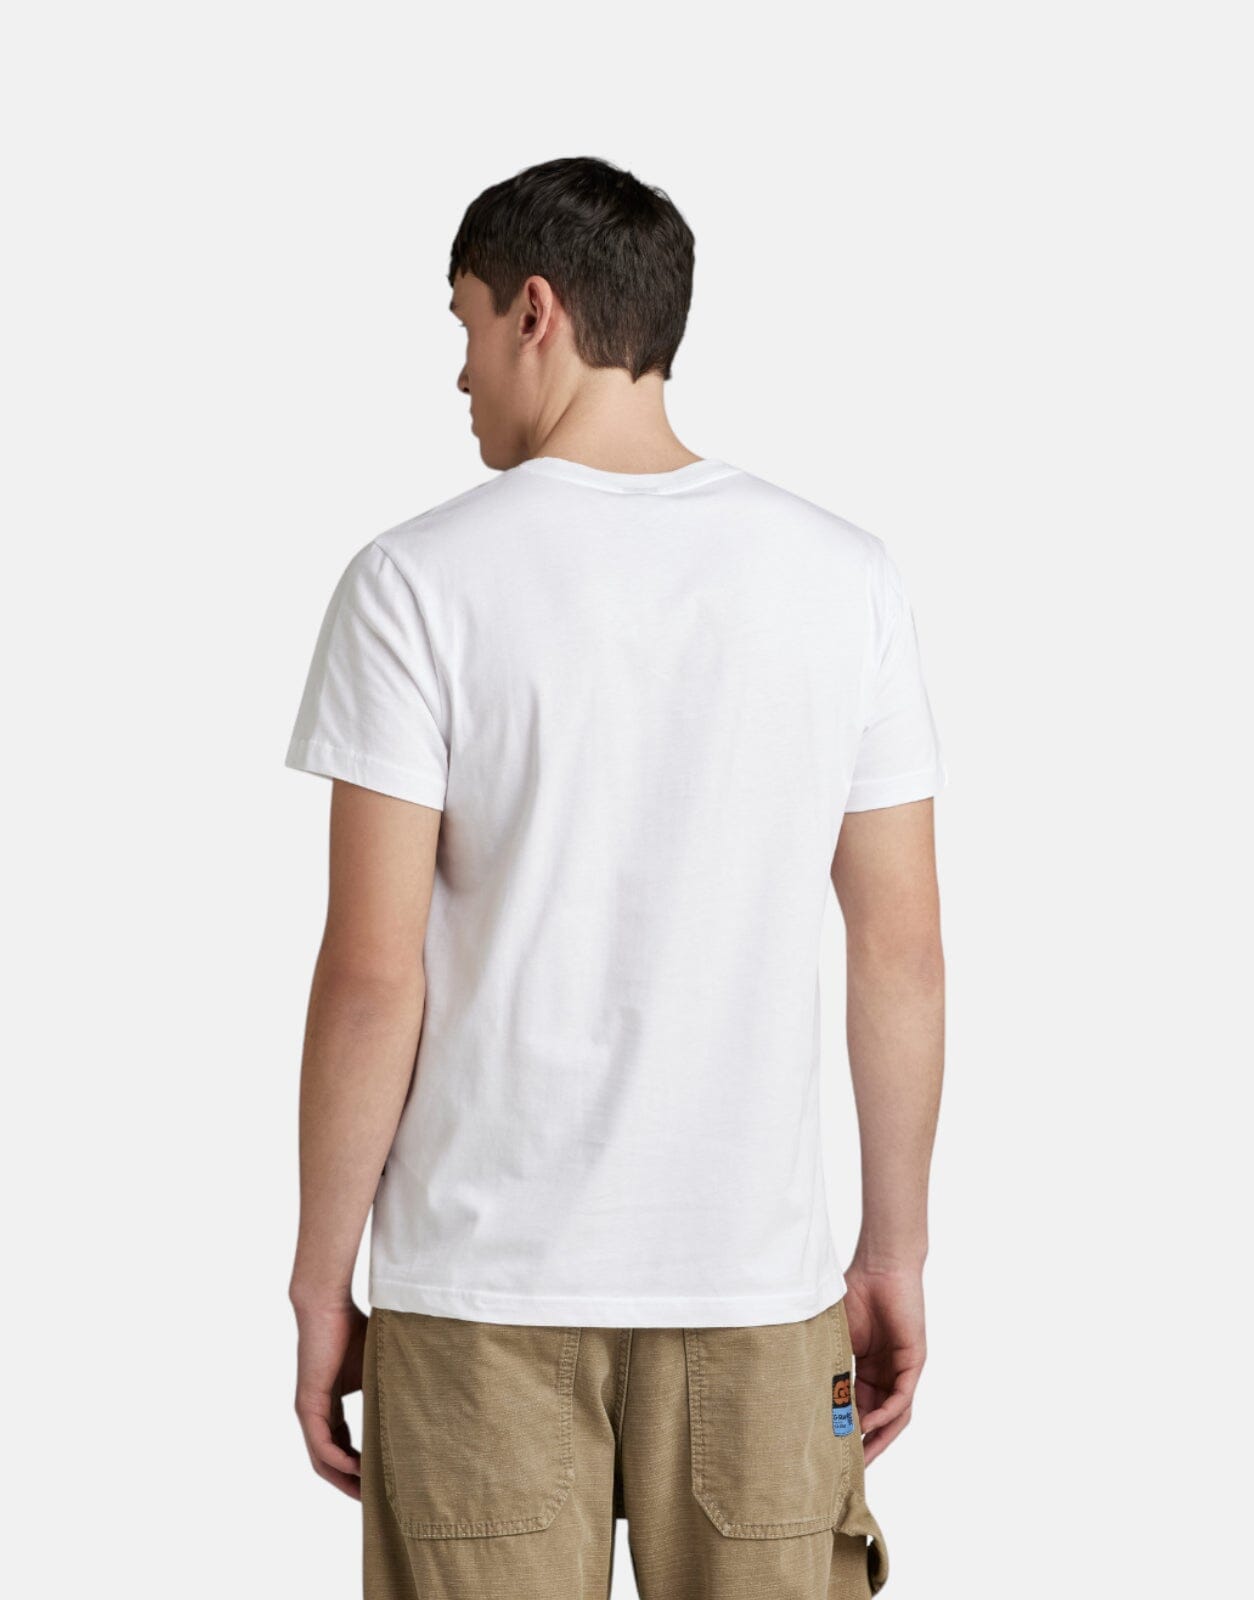 G-Star RAW Camo Box Graphic T-Shirt - Subwear